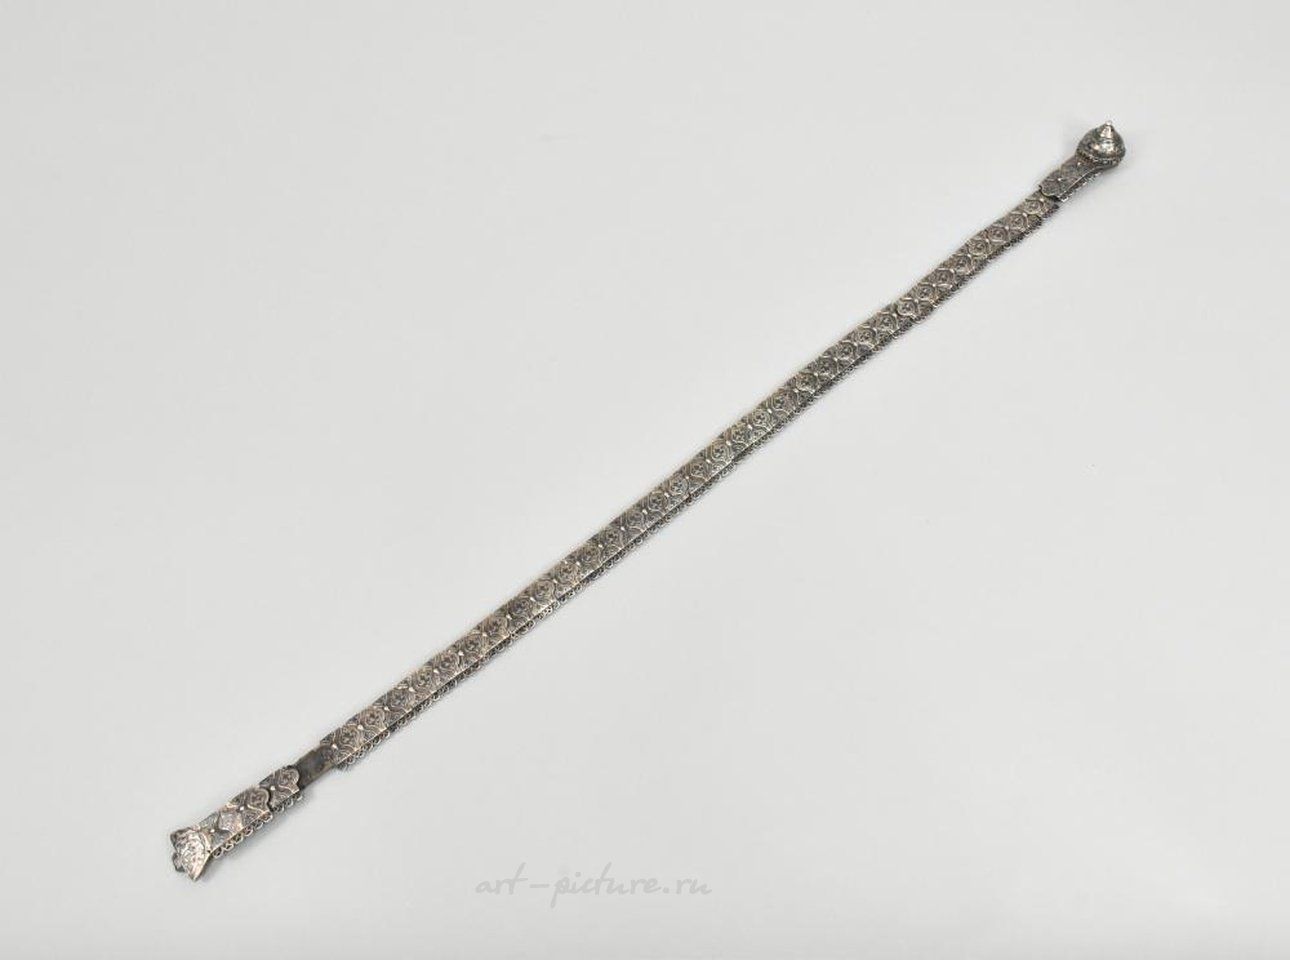 Русское серебро , Русский императорский серебряный пояс, маркировка 84 пробы.